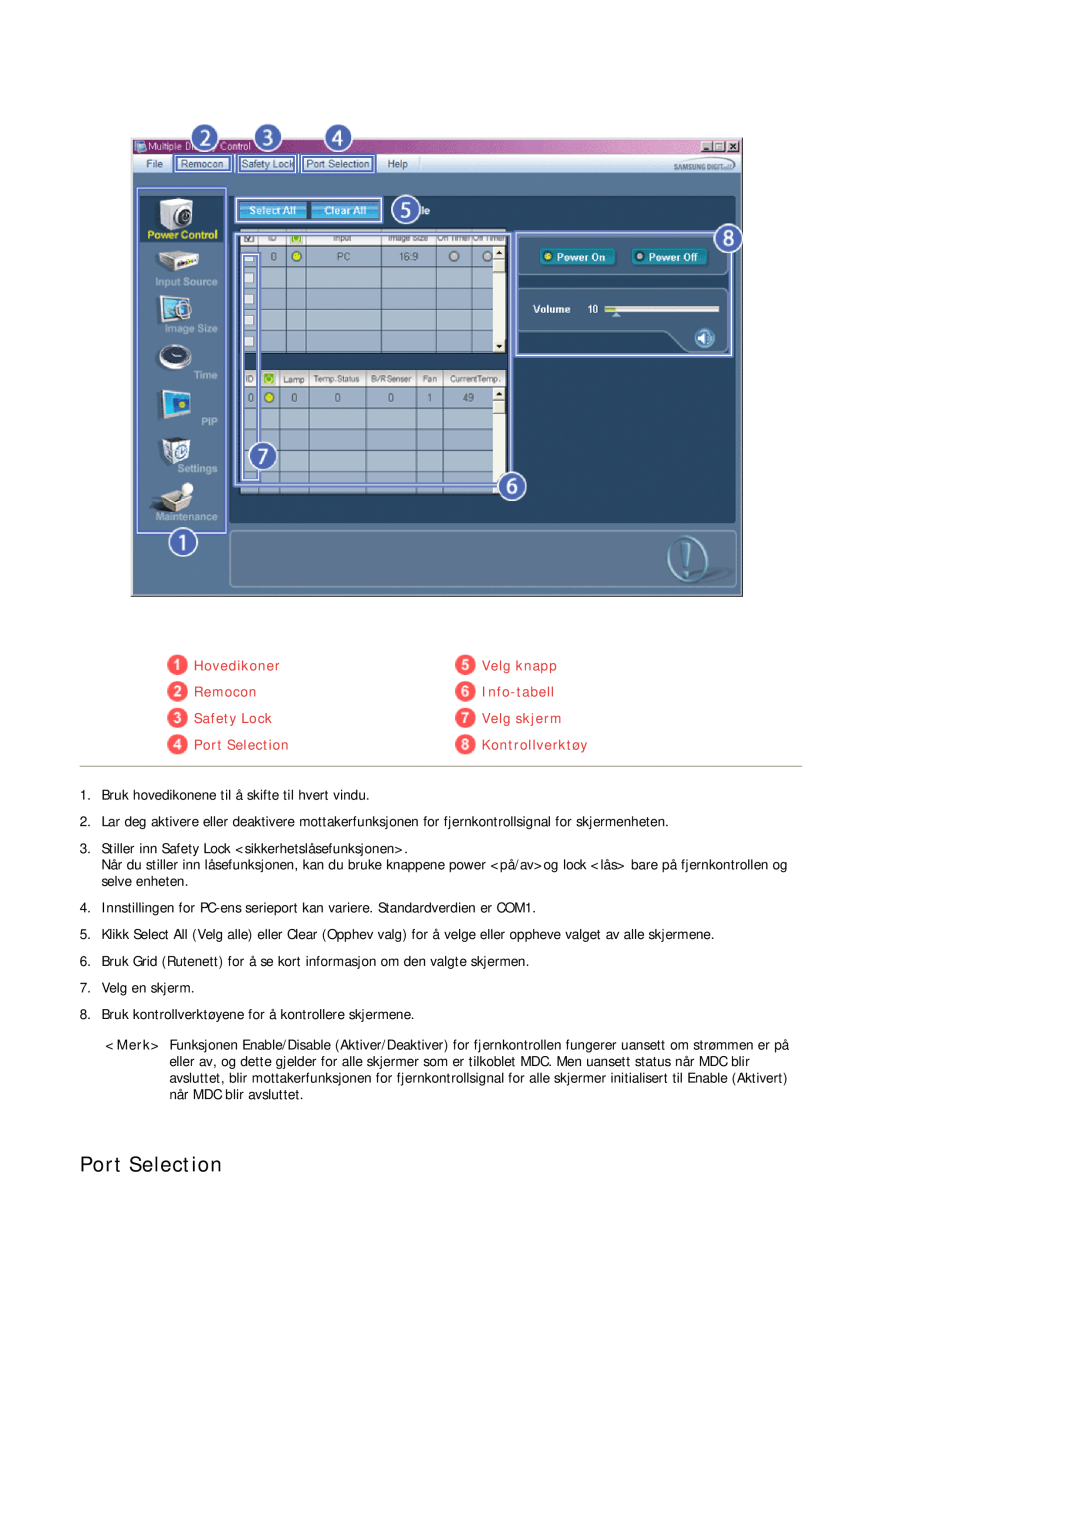 Samsung PH50KPFLBF/EN manual Port Selection, Hovedikoner, Velg knapp, Remocon, Info-tabell, Safety Lock, Velg skjerm 